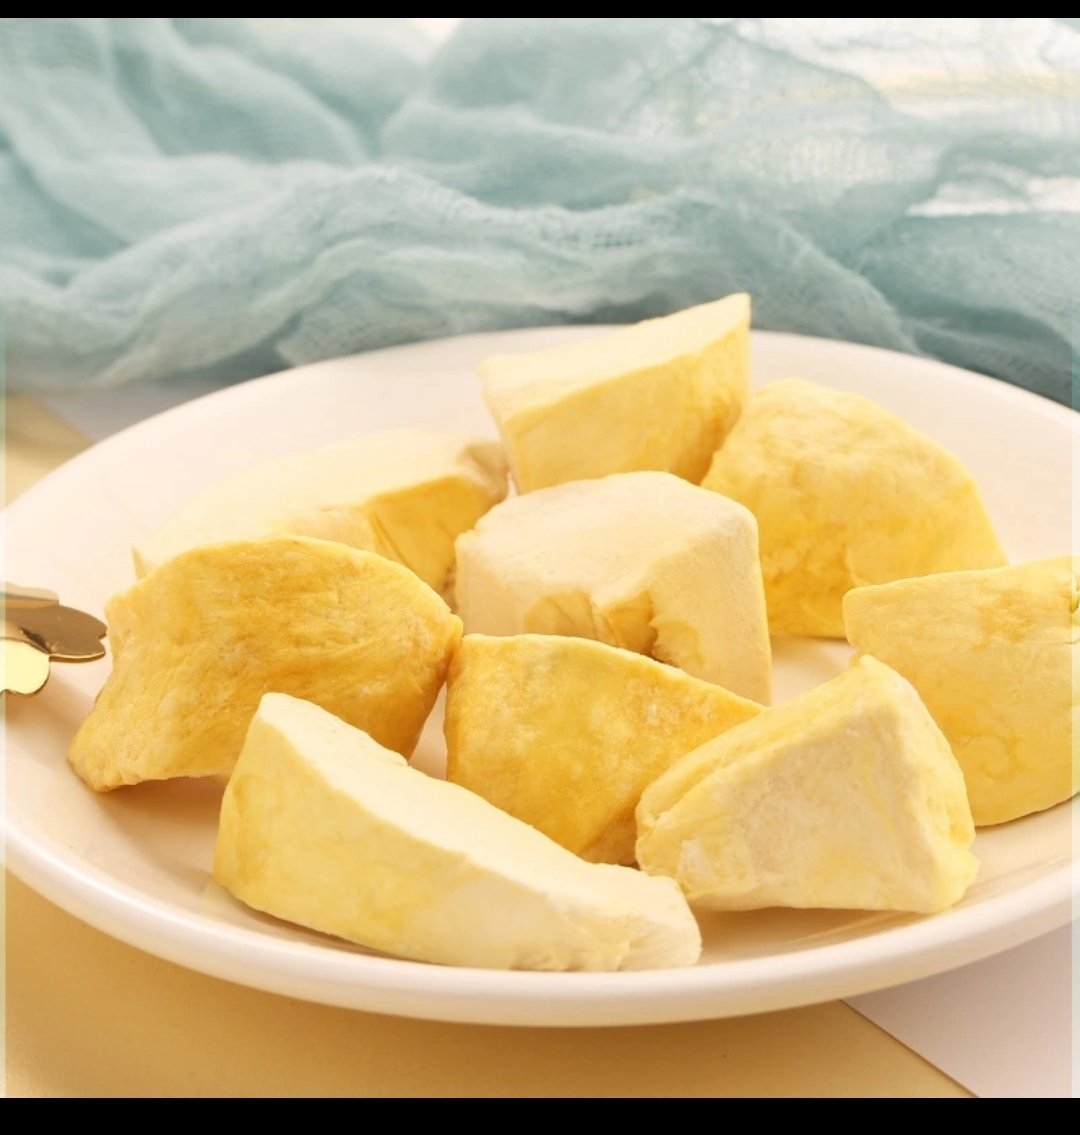 Freeze droege durian plakjes